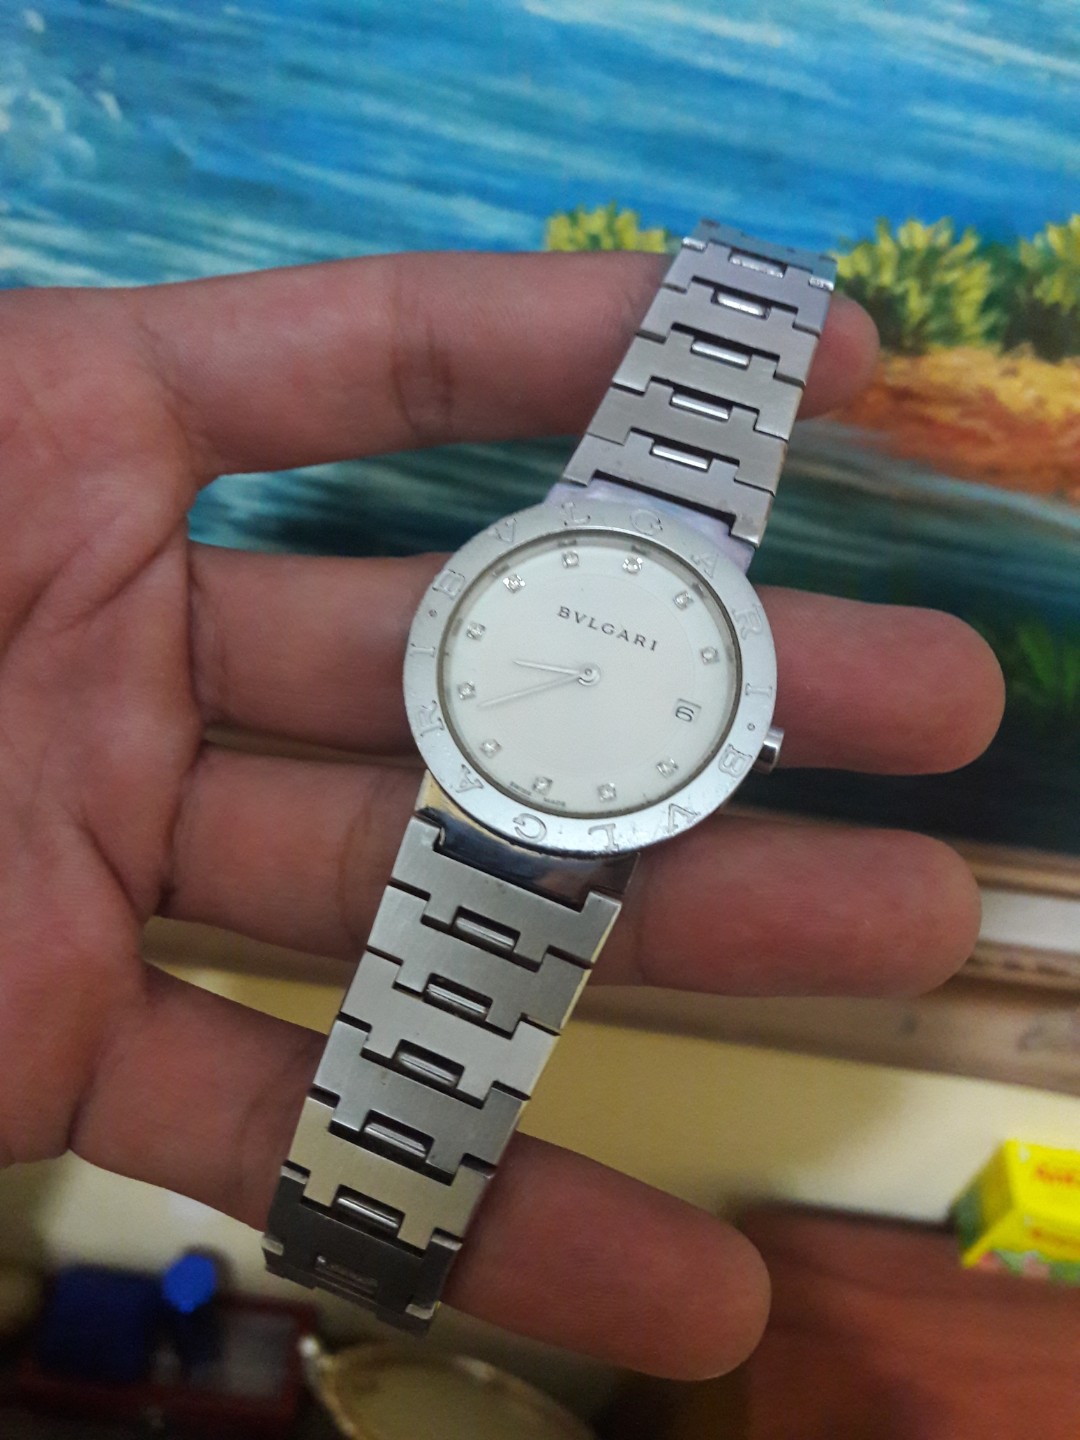 harga jam tangan bvlgari l9030 original